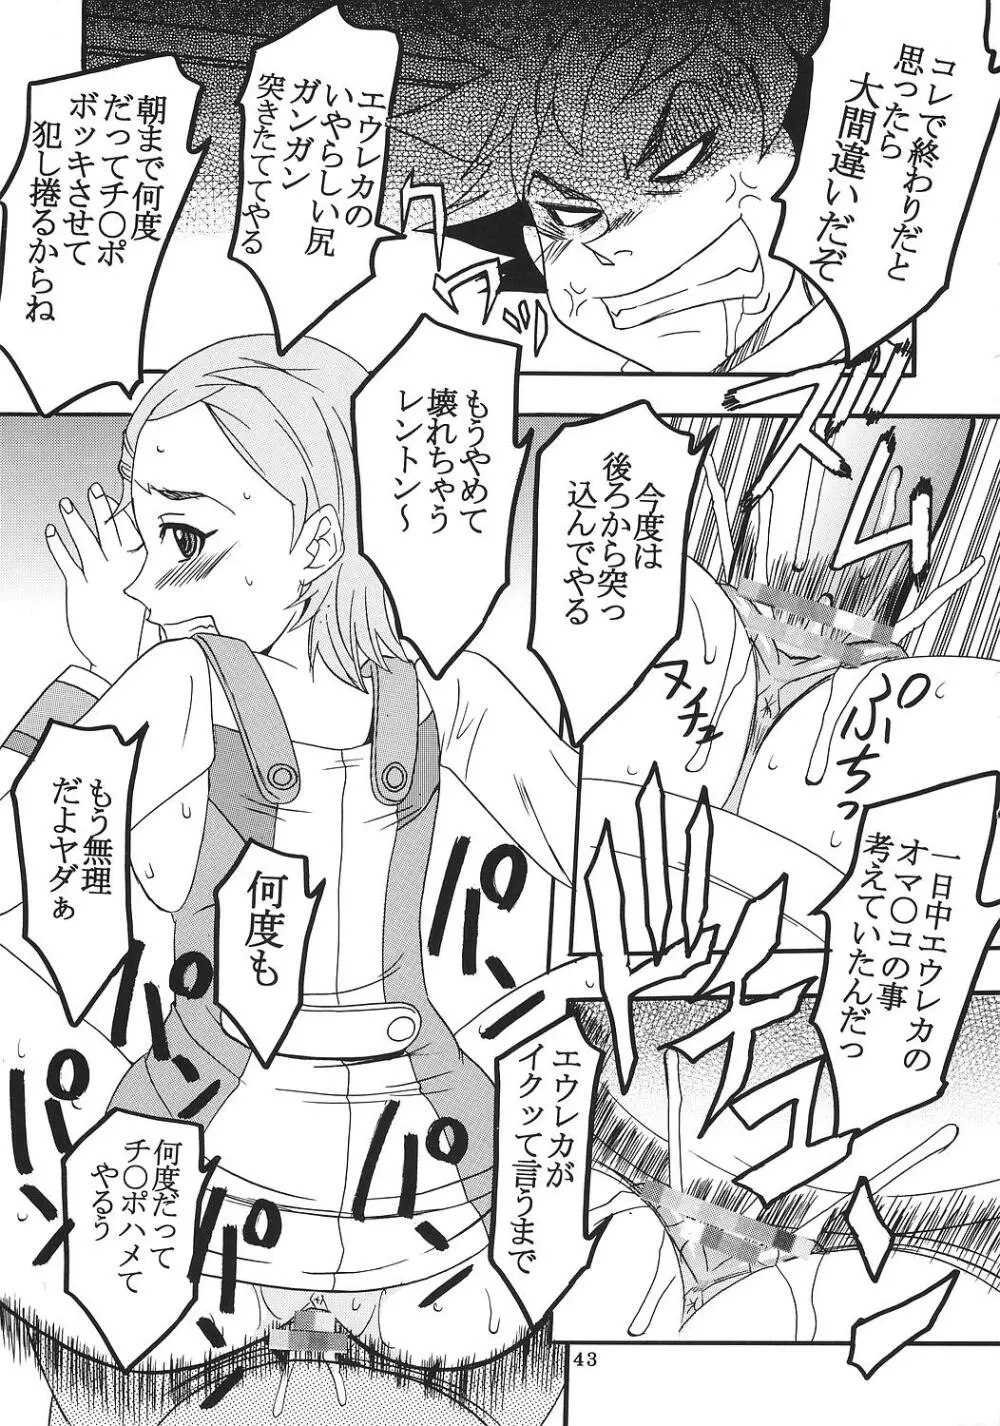 裏 ray-out vol.2 - page44